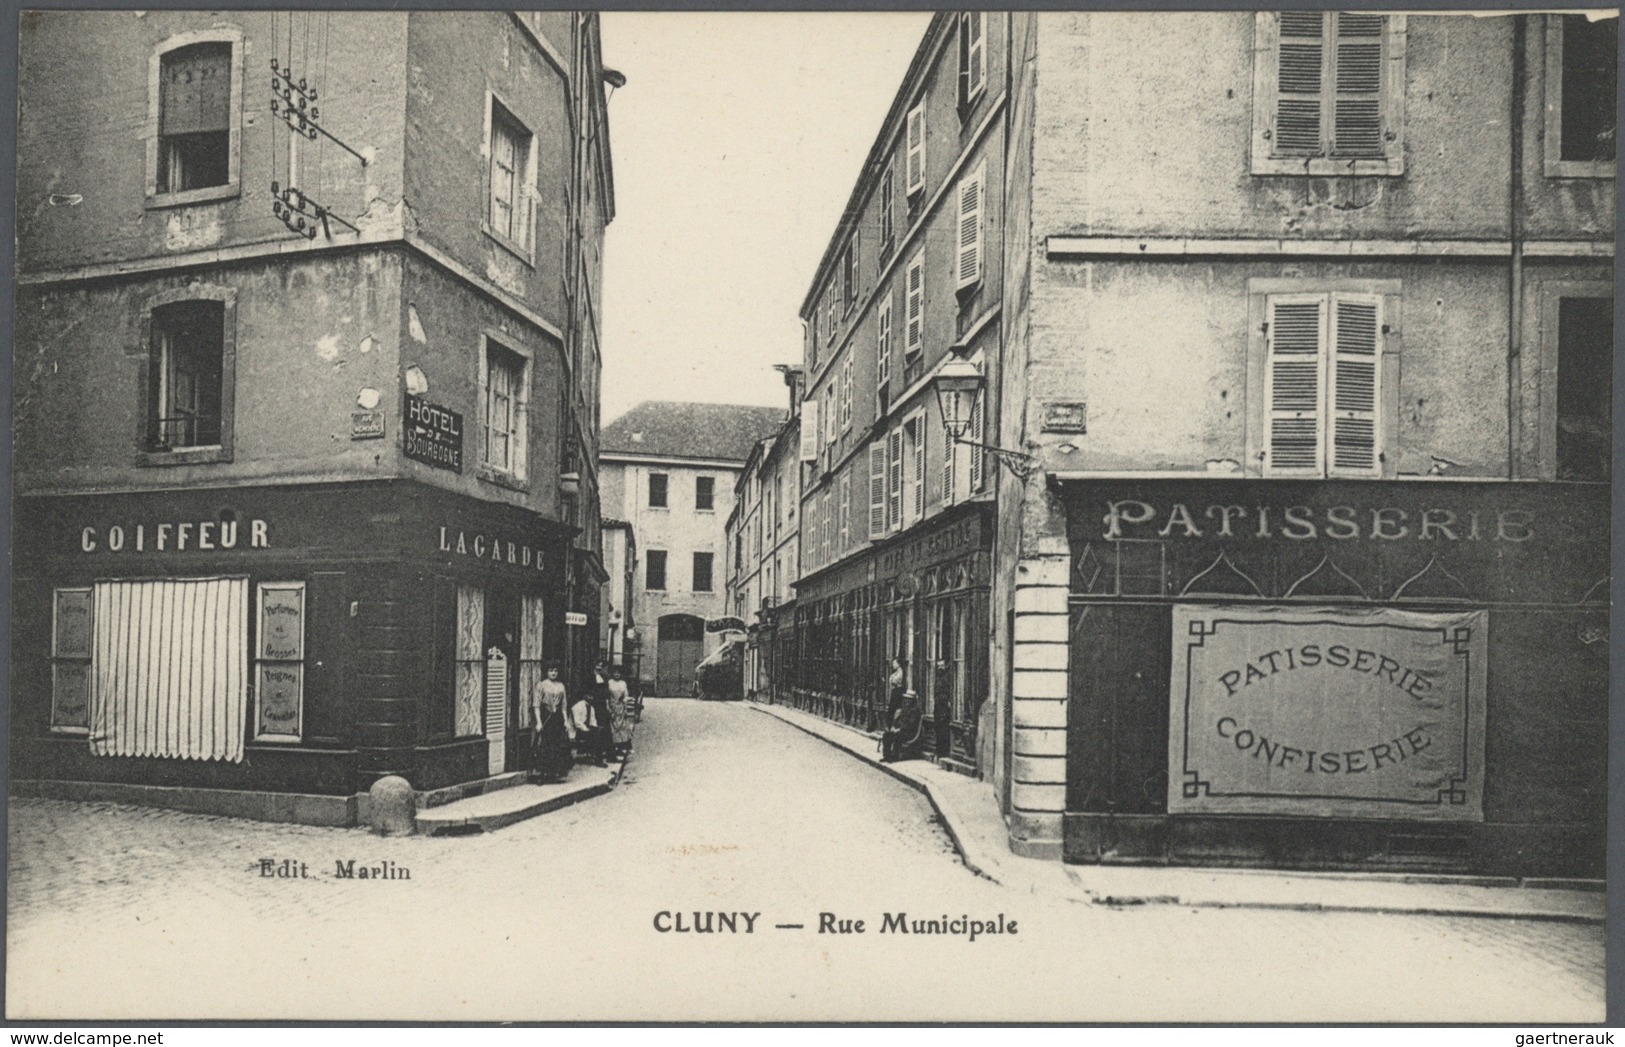 26539 Frankreich - Besonderheiten: 1898/1930, FRANCE, immense stock of around 51500 historical picture pos